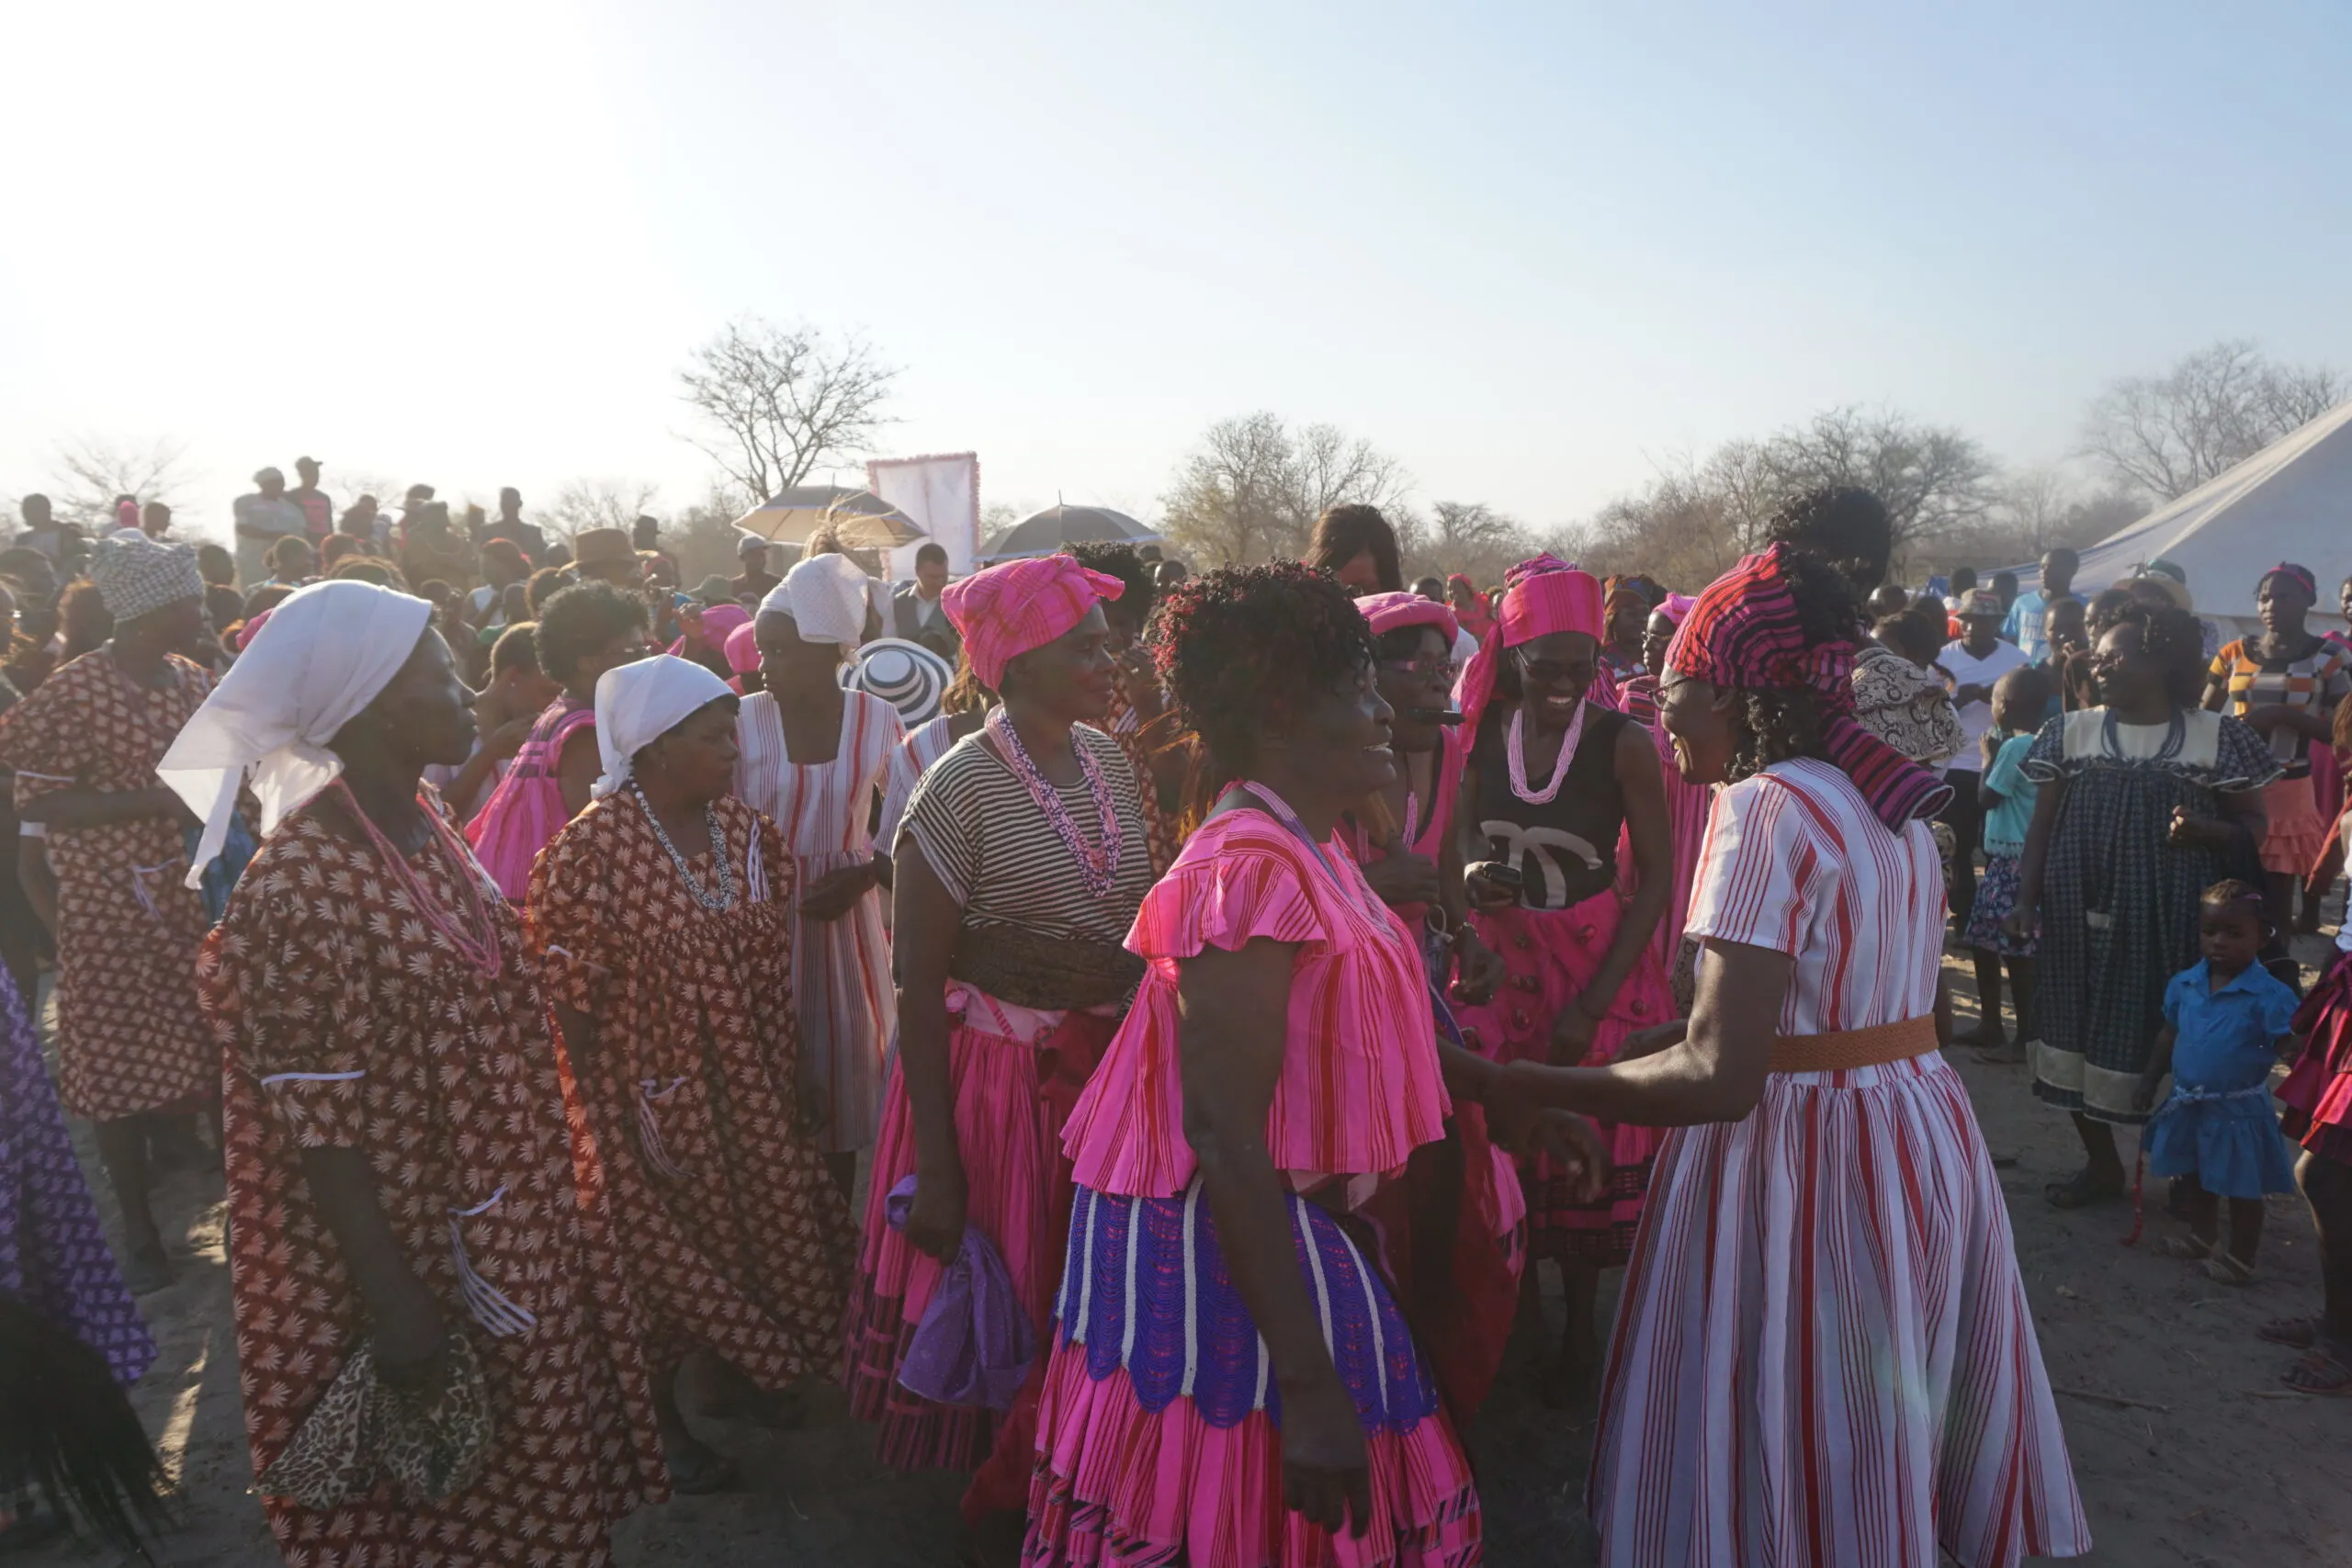 Eine Menschenmenge in Namibia versammelt sich zu einer traditionellen Hochzeit in einem Dorf. Die Menschen tragen bunte traditionelle Kleidung, die reich an Mustern und Farben ist. Frauen tragen kunstvoll gestaltete Kleider oder Röcke mit bunten Stoffen, während Männer traditionelle Gewänder oder Hemden mit bunten Mustern tragen. Die Kleidung spiegelt die kulturelle Vielfalt und Traditionen des Landes wider. Die Szene ist lebhaft und voller Energie, während die Gäste sich versammeln, um die feierliche Veranstaltung zu genießen.